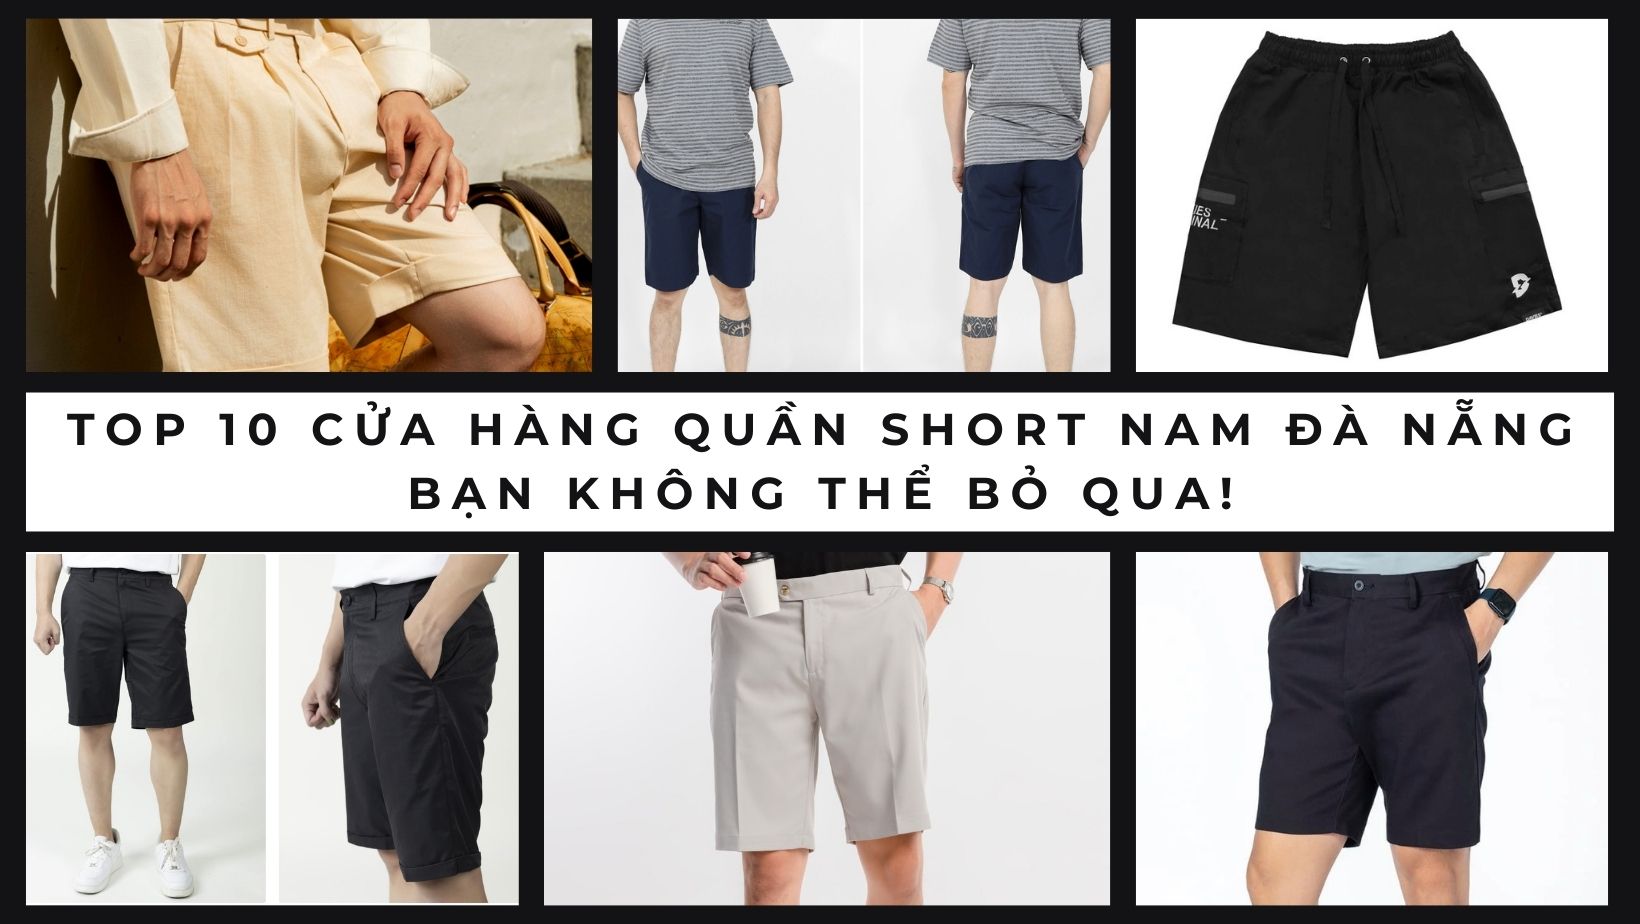 Top 10 cửa hàng quần short nam Đà Nẵng bạn không thể bỏ qua!